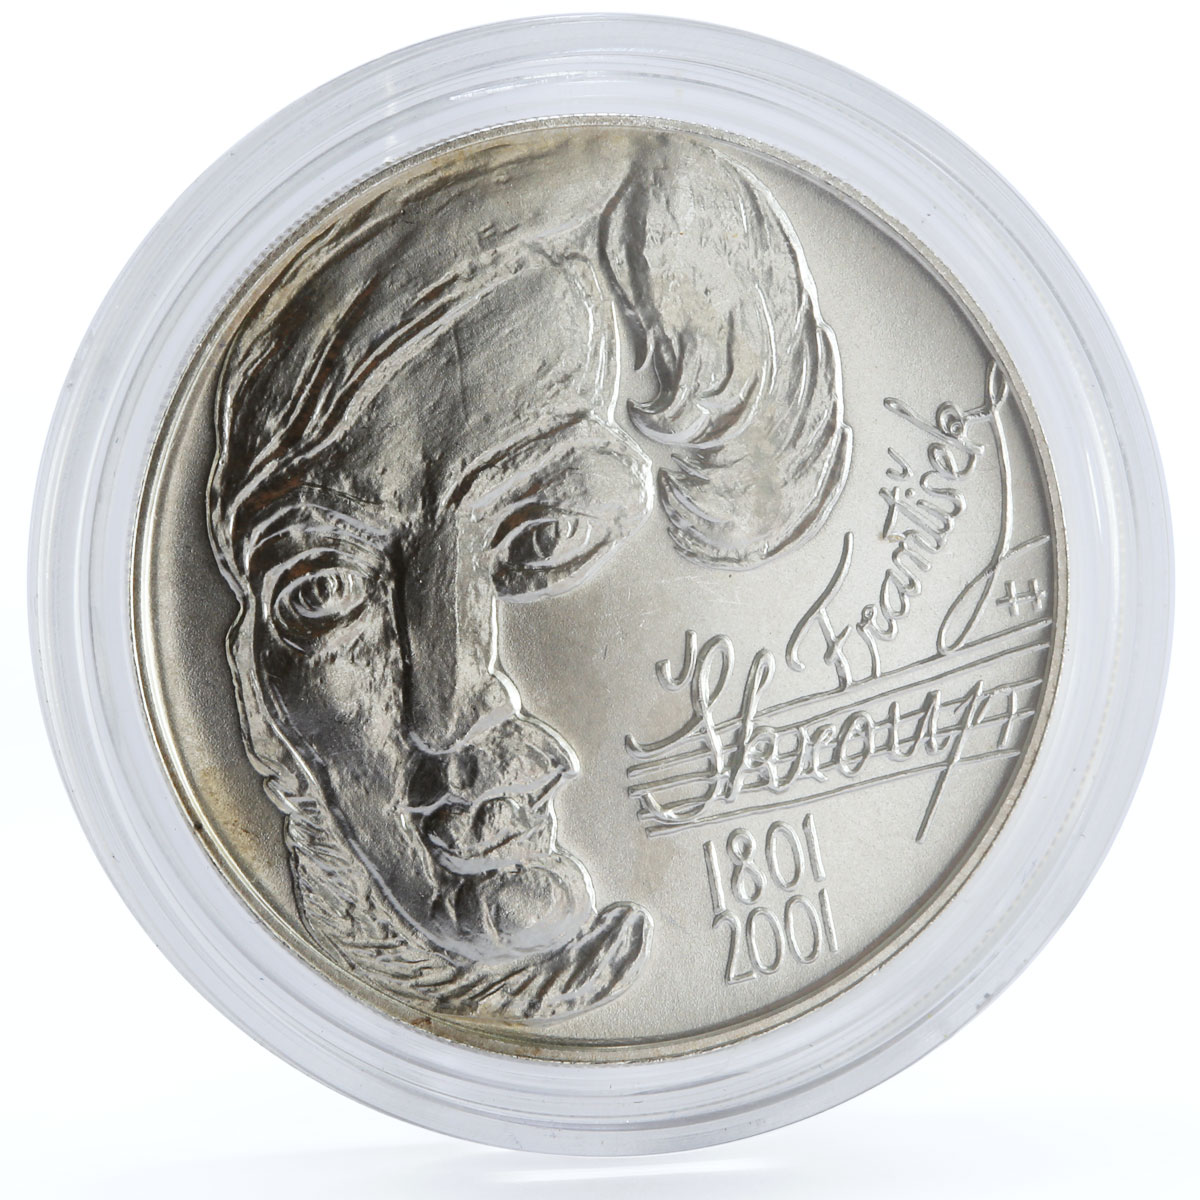 Czech Republic 200 korun Music Composer Frantisek Skroup silver coin 2001